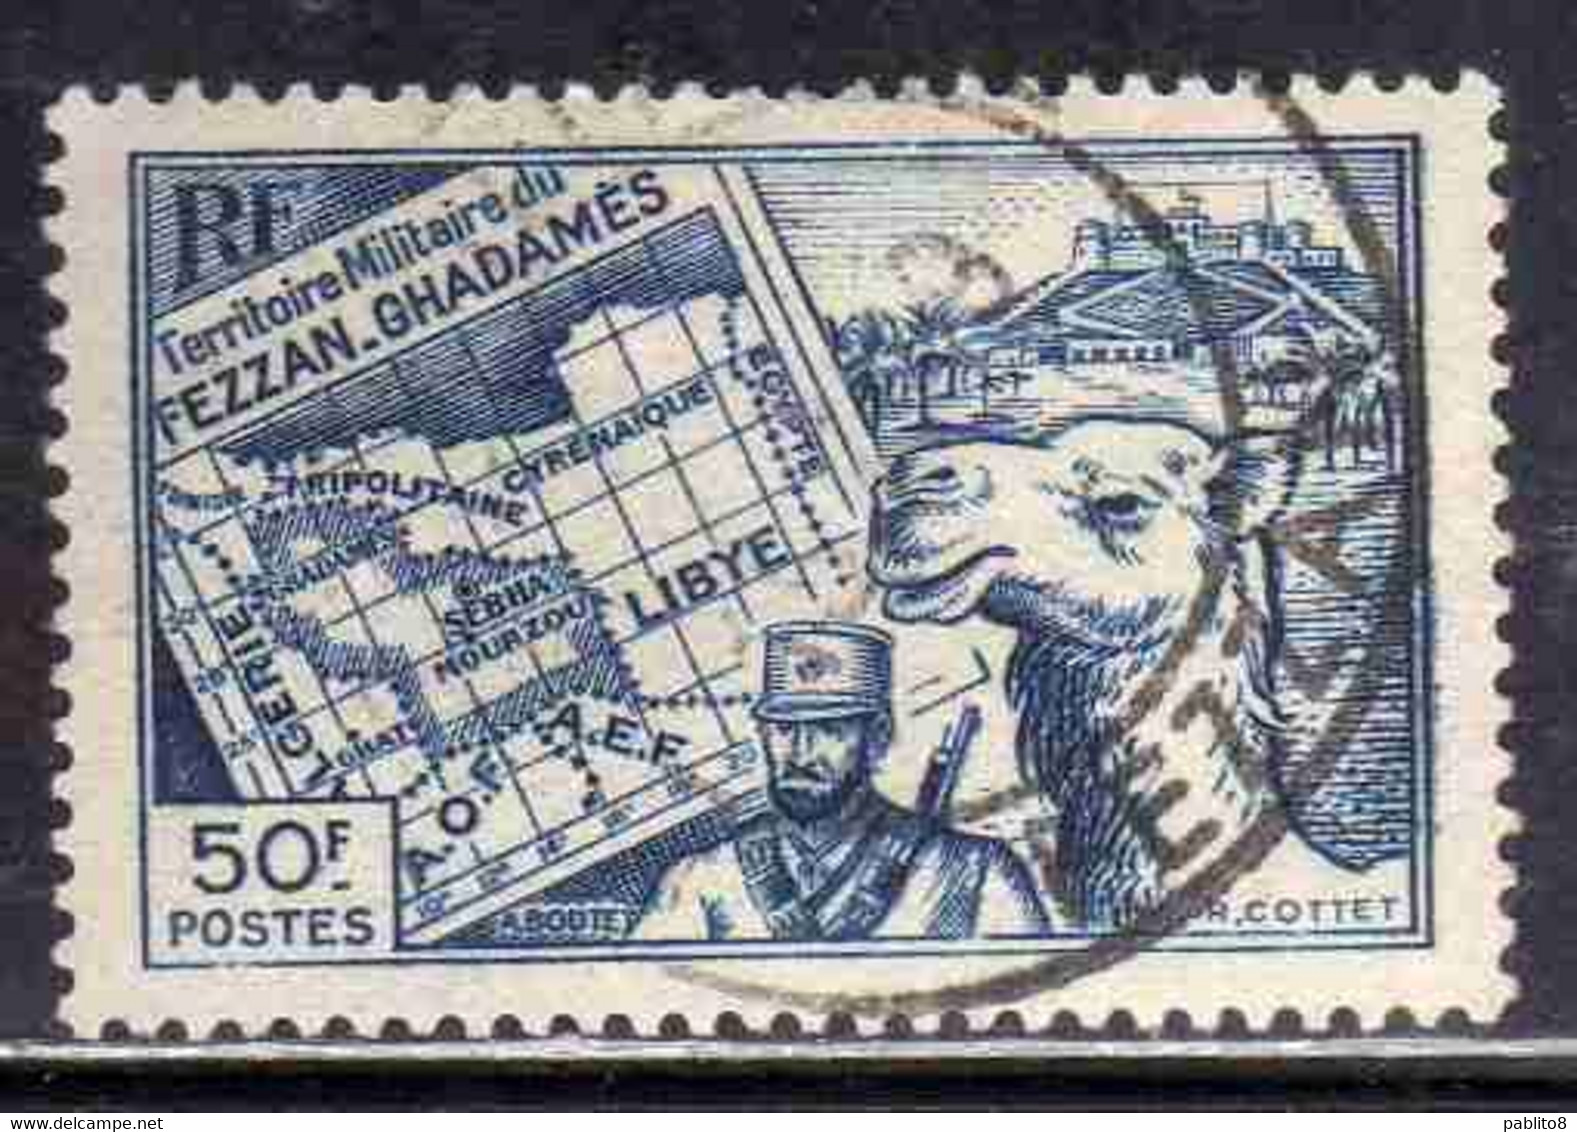 FEZZAN E GHADAMES 1946 TERRITORIO MILITARE MILITAIRE CARTA E MEHARISTA MAP F 50f USATO USED OBLITERE' - Unused Stamps